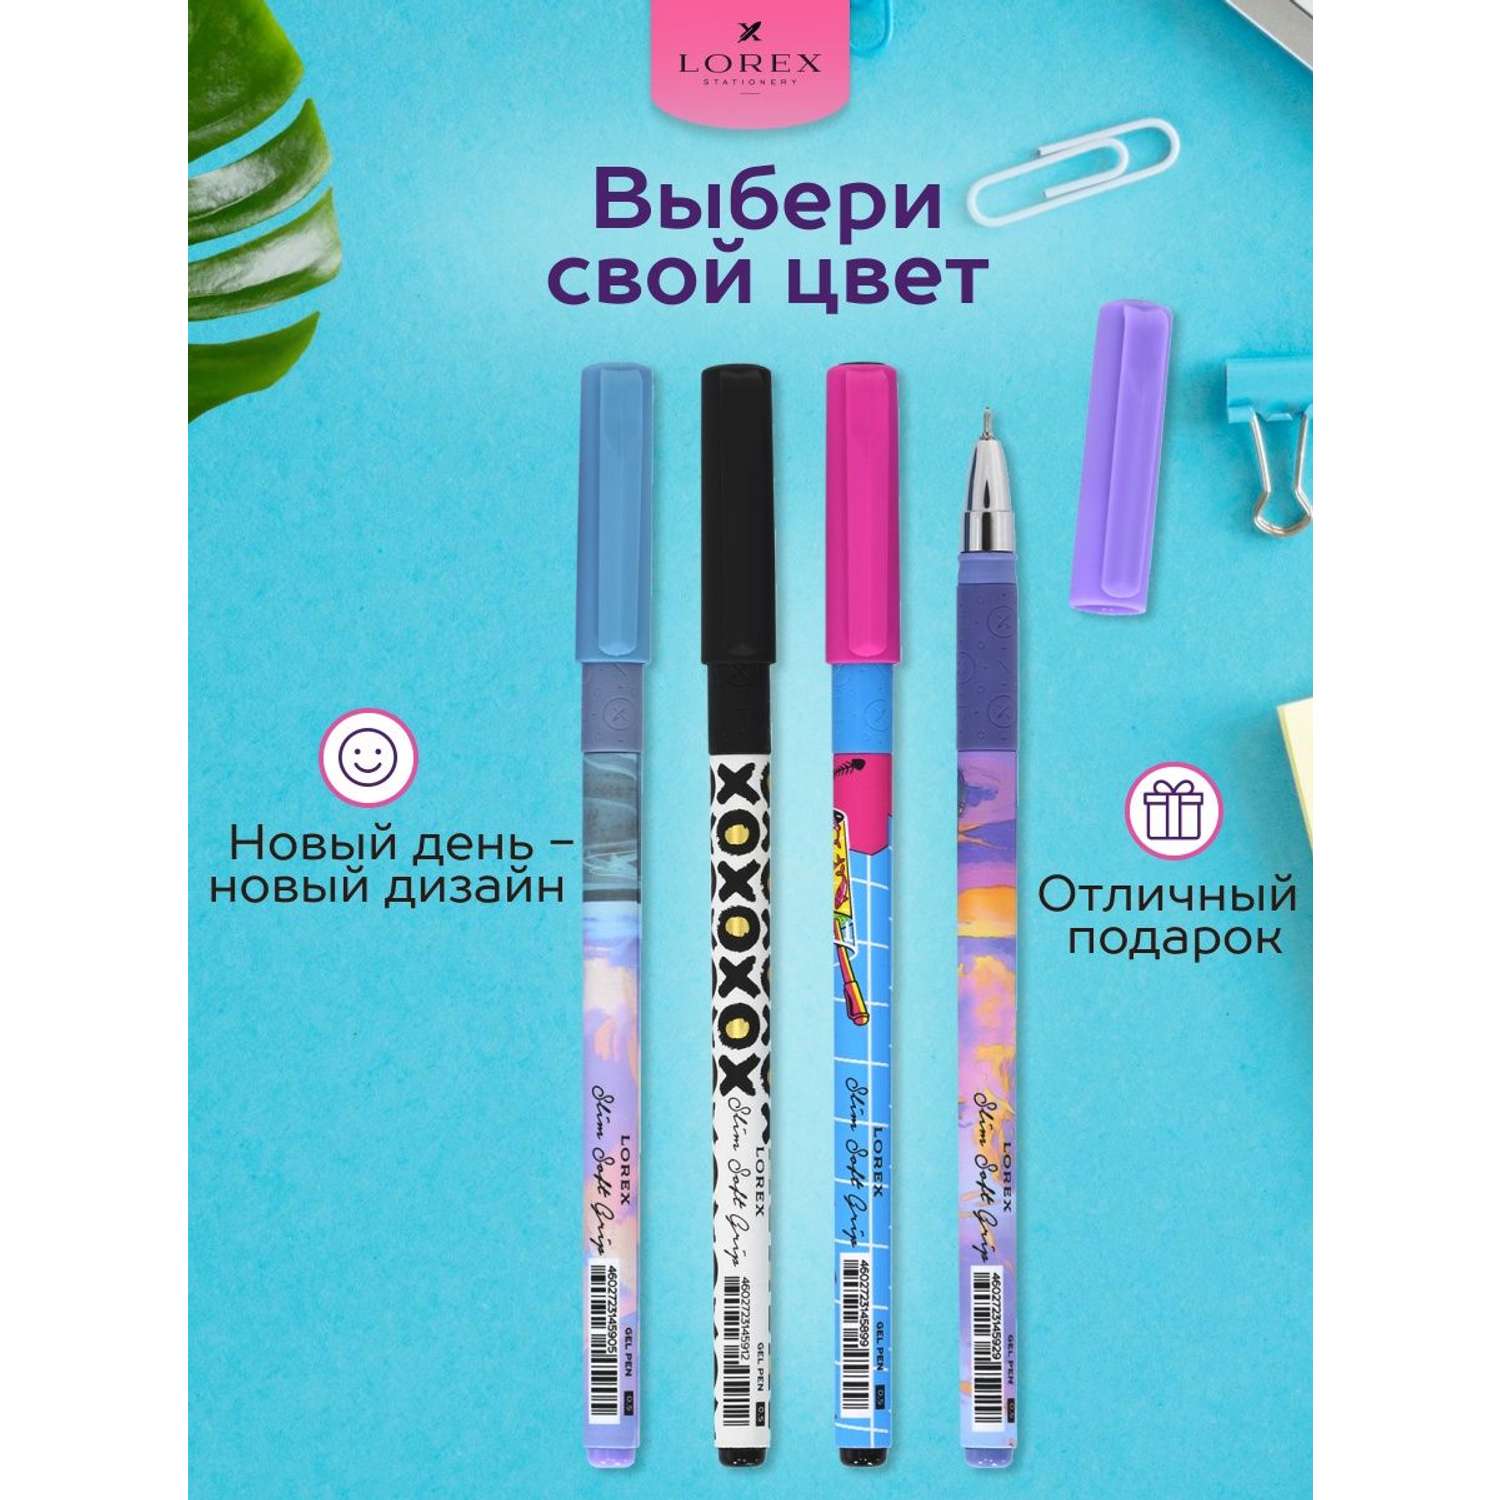 Ручки гелевые в наборе Lorex Stationery набор 4 штуки синие и черные чернила - фото 3